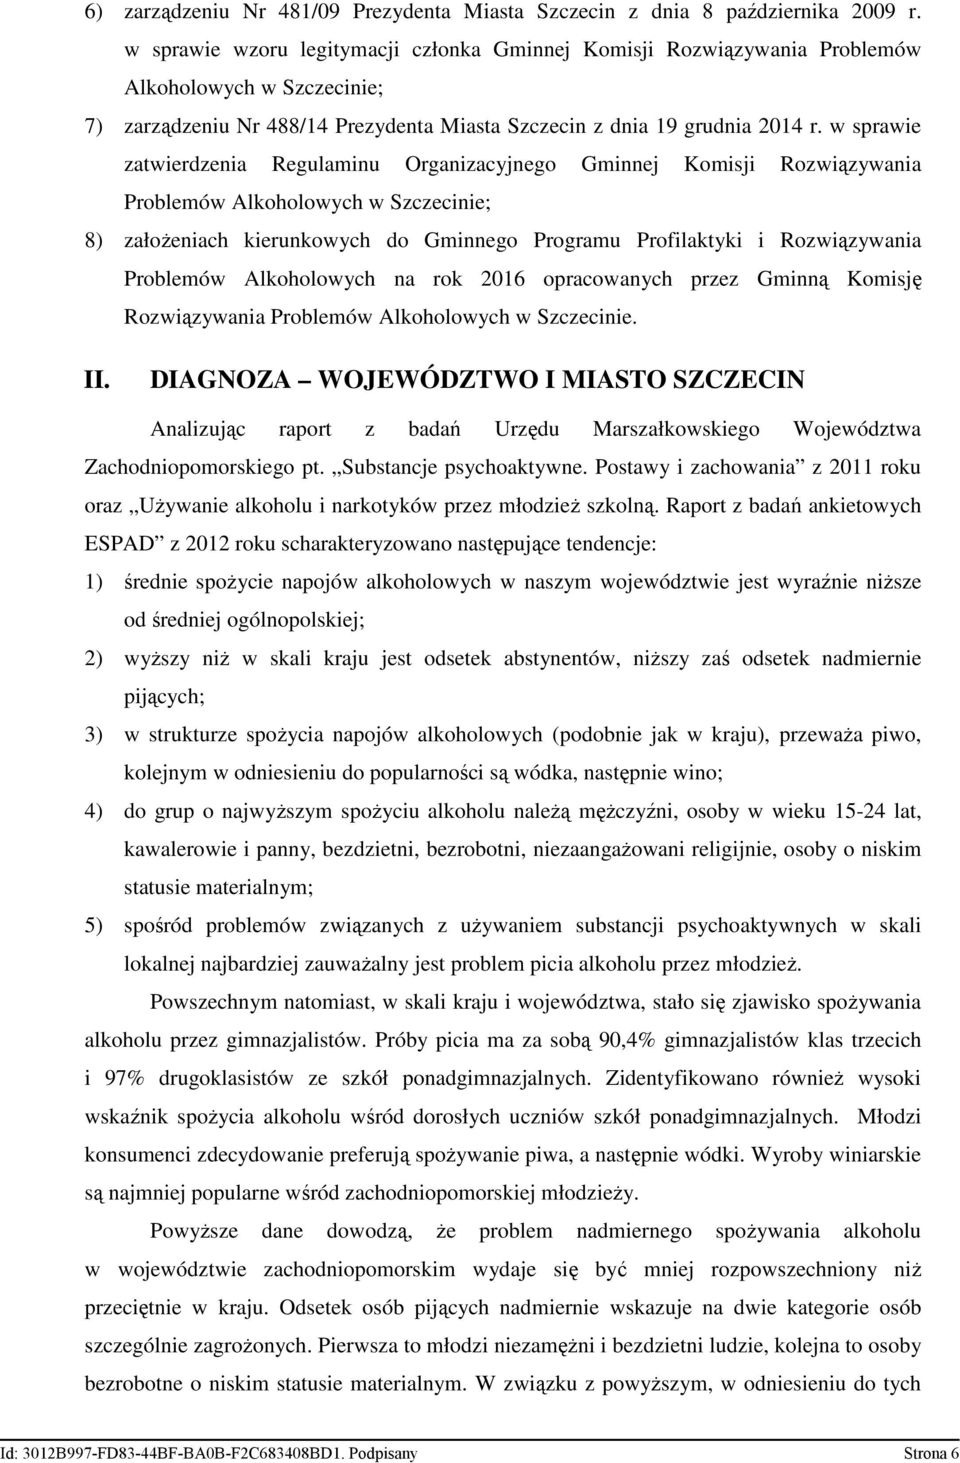 w sprawie zatwierdzenia Regulaminu Organizacyjnego Gminnej Komisji Rozwiązywania Problemów Alkoholowych w Szczecinie; 8) załoŝeniach kierunkowych do Gminnego Programu Profilaktyki i Rozwiązywania